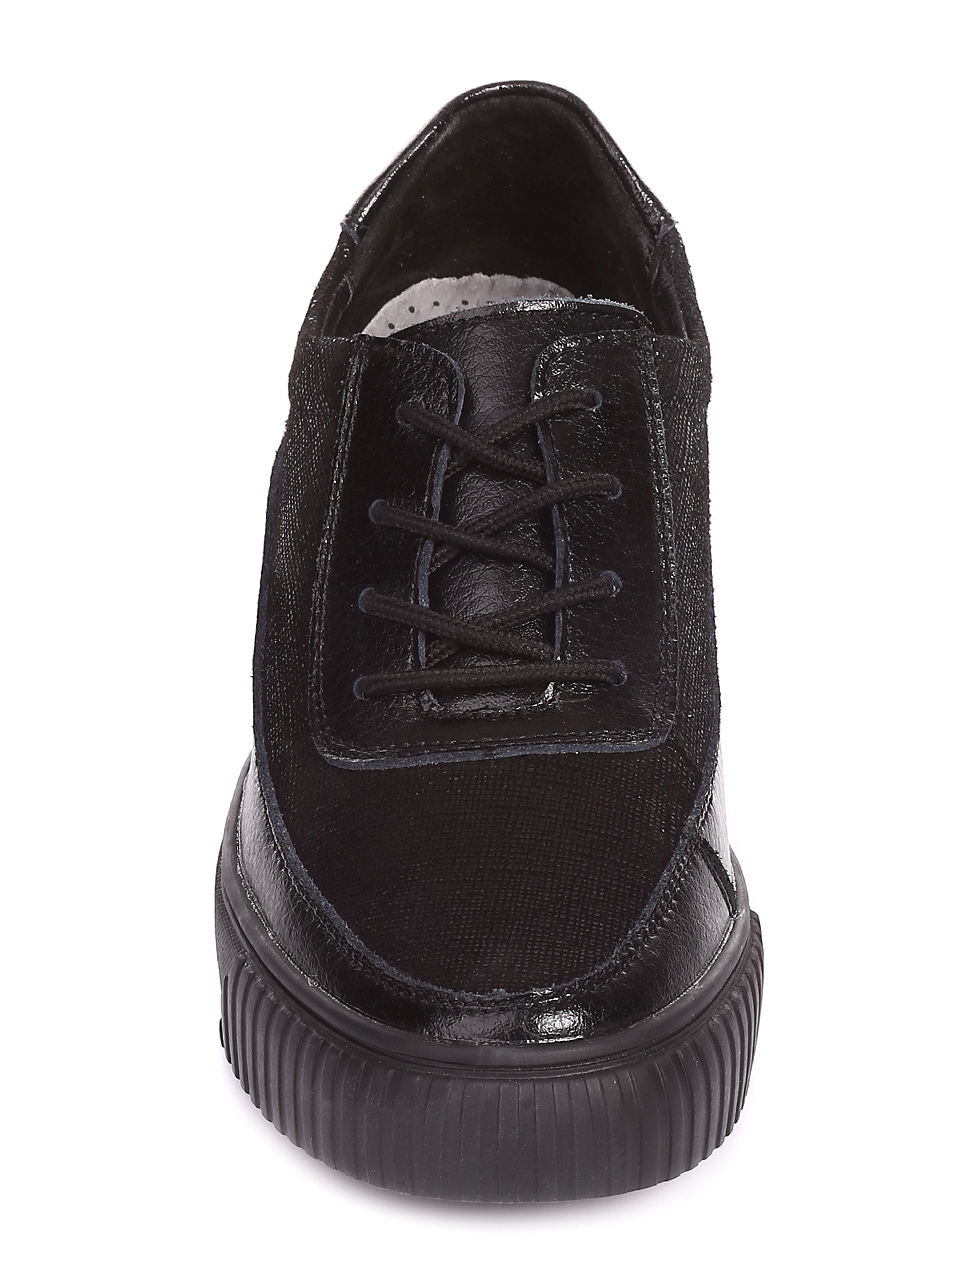 Дамски обувки от естествена кожа на платформа 3AF-20036 black